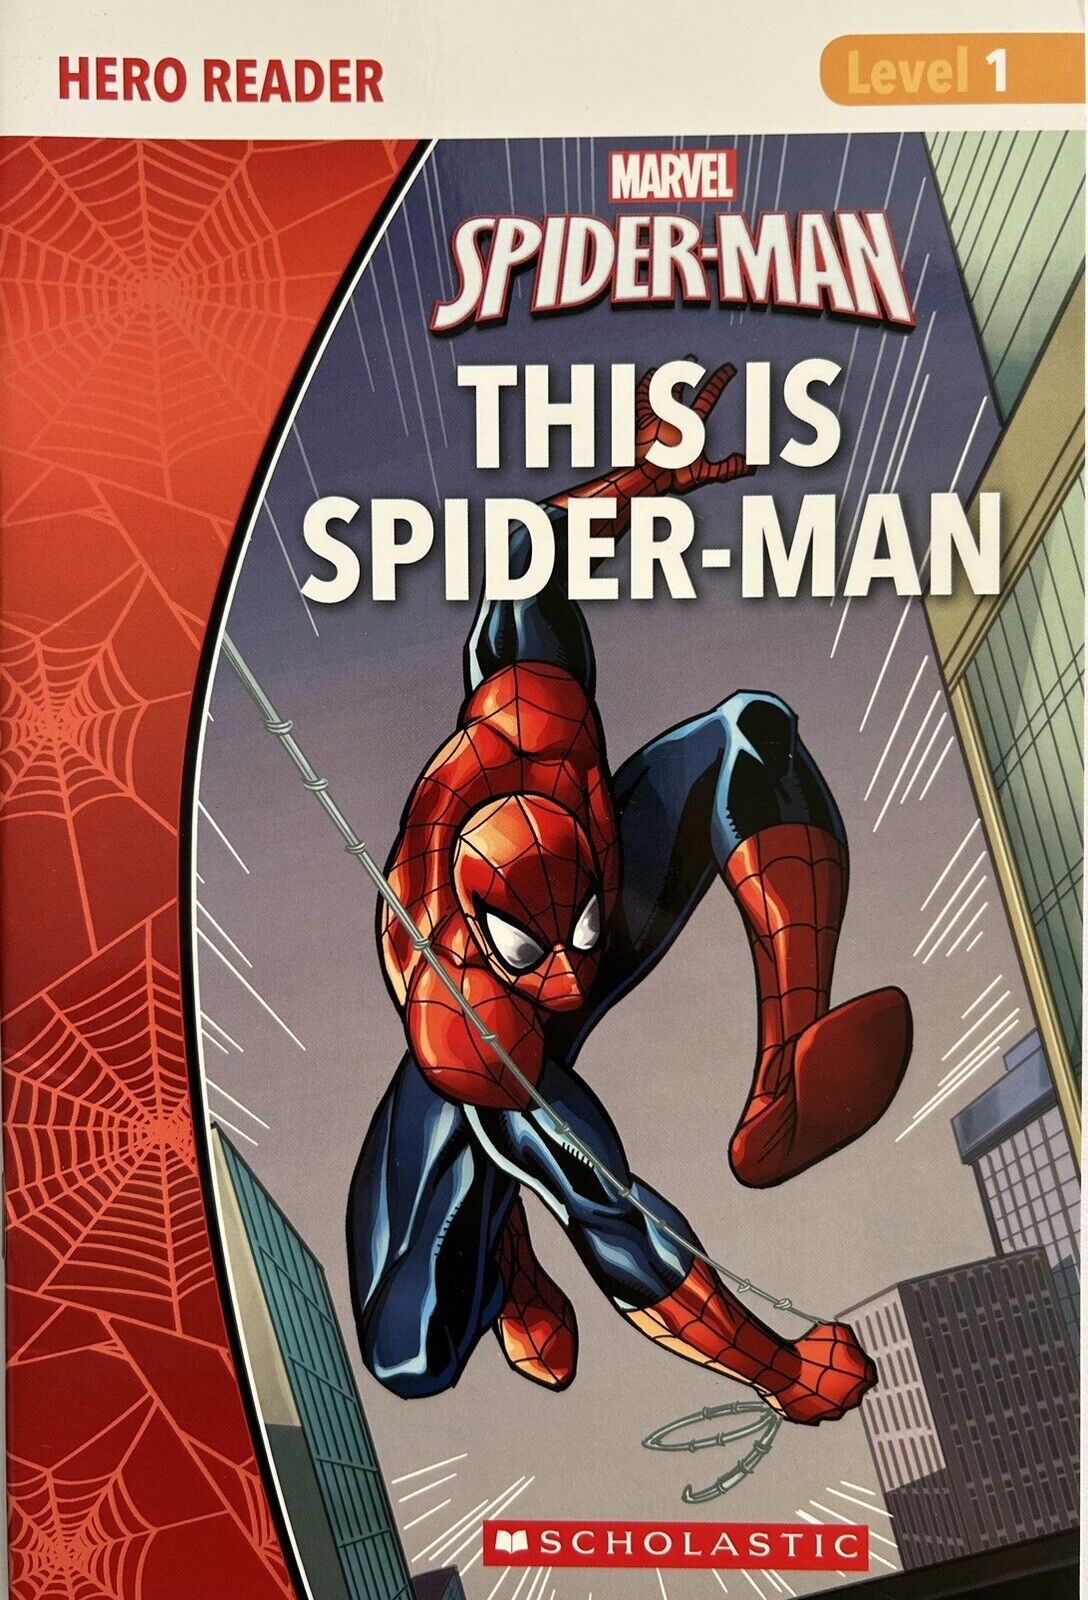 Marvel Books - SPIDER-MAN: THIS IS SPIDER-MAN Hero Reader Level 1